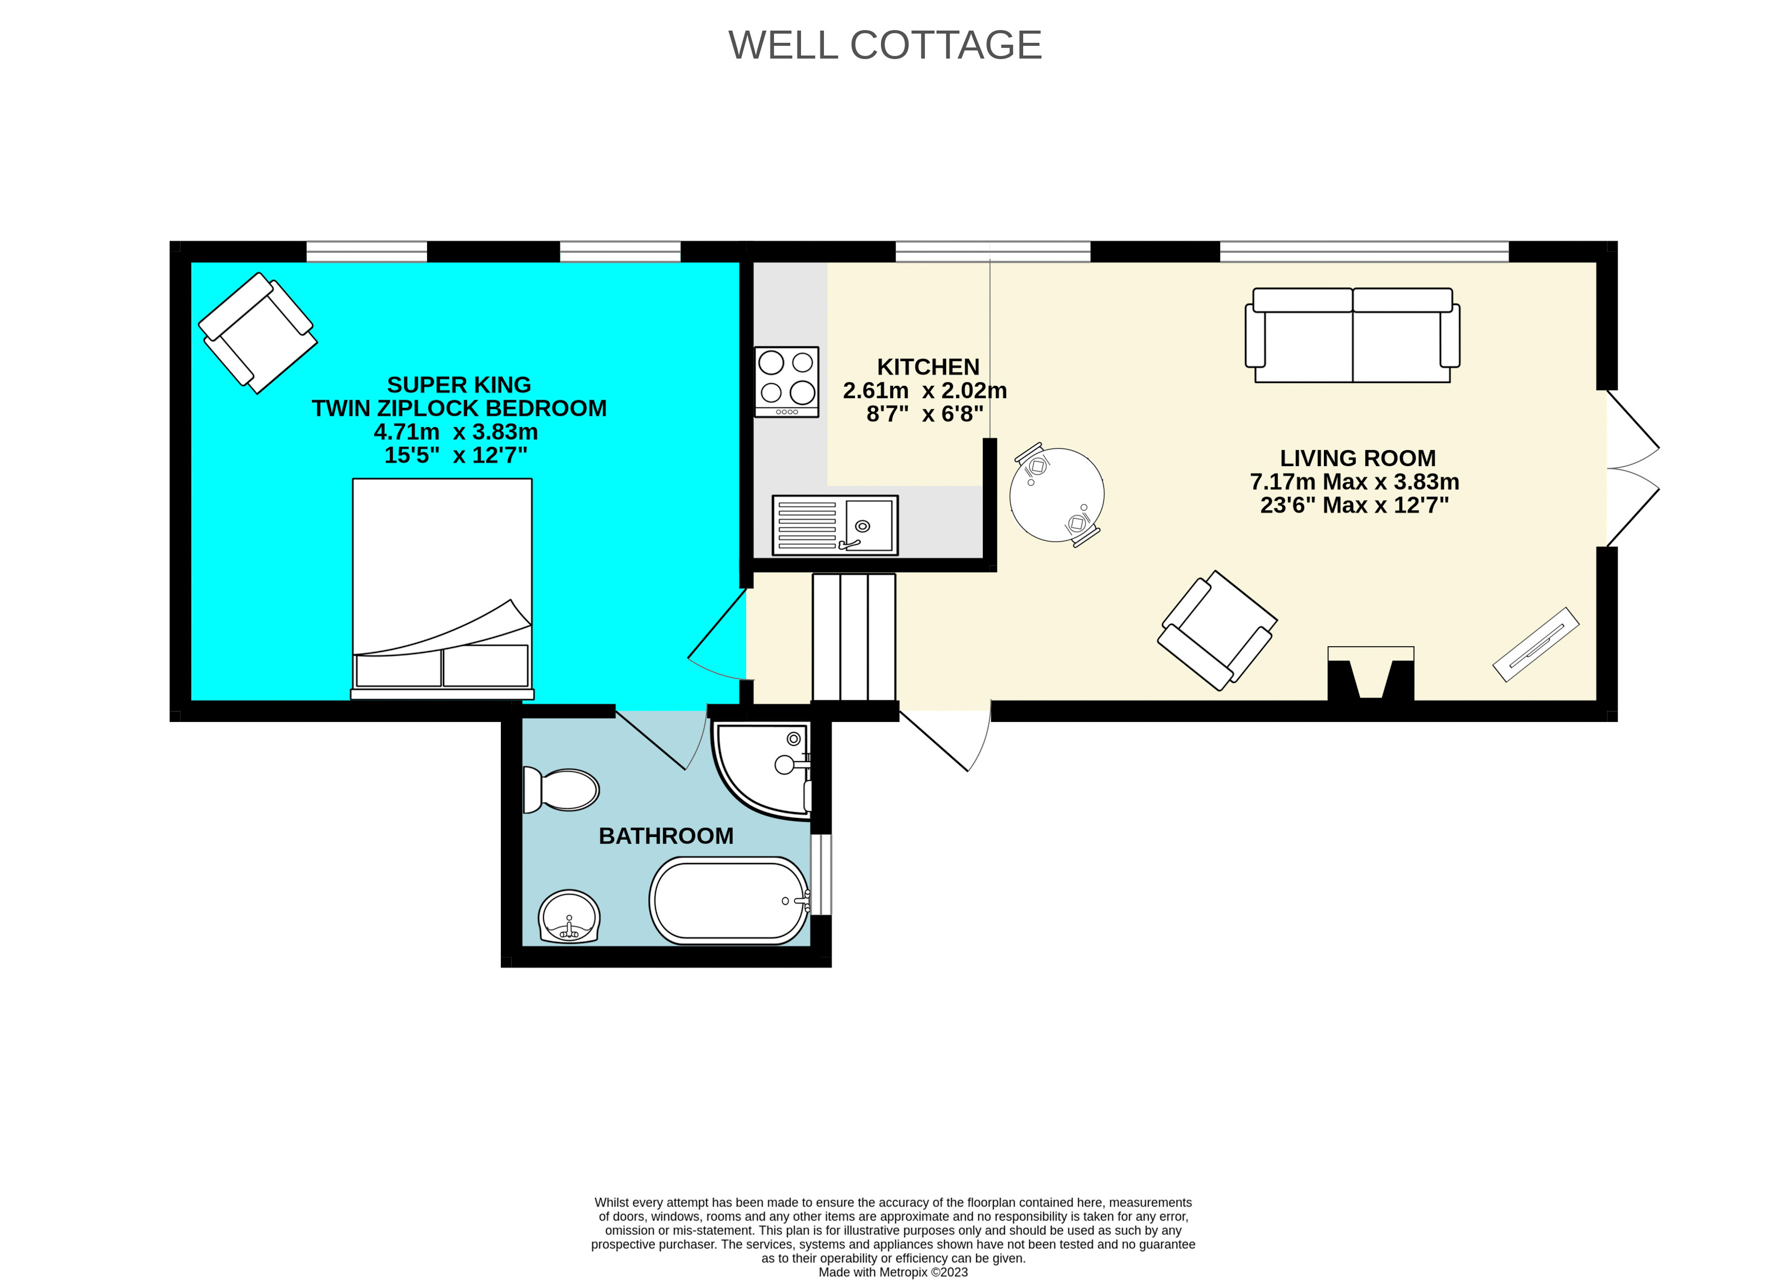 Floor Plan for Well Cottage sleeps 2 in Cornwall near Looe 